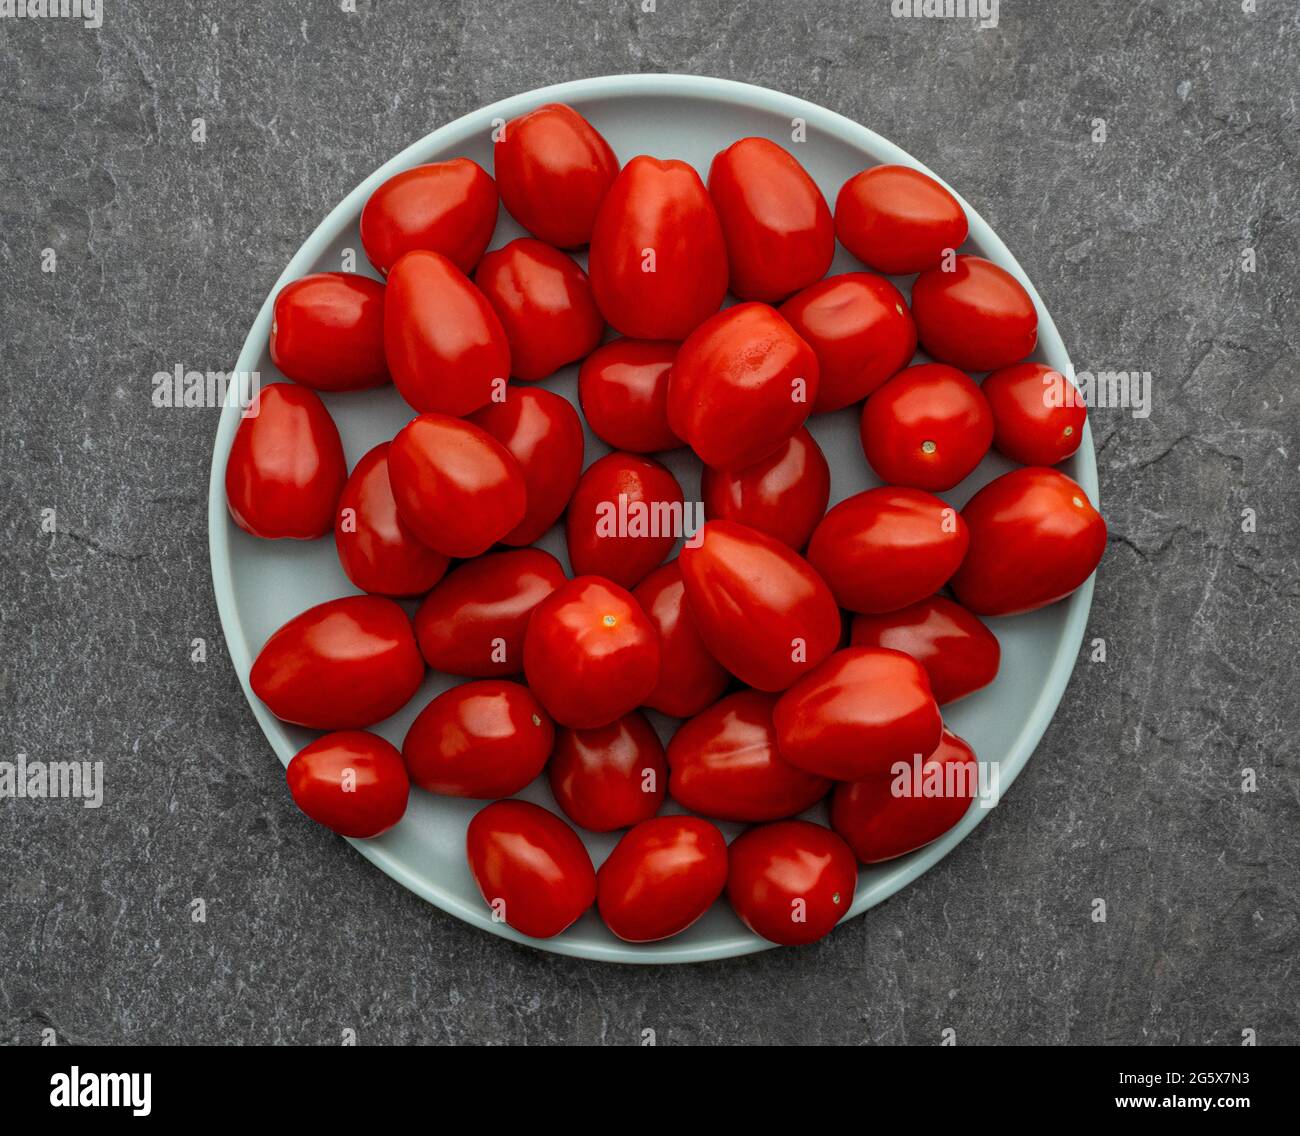 Plan de la vue de petites tomates prune sur une assiette bleu oeuf de canard, sur un fond gris texturé Banque D'Images